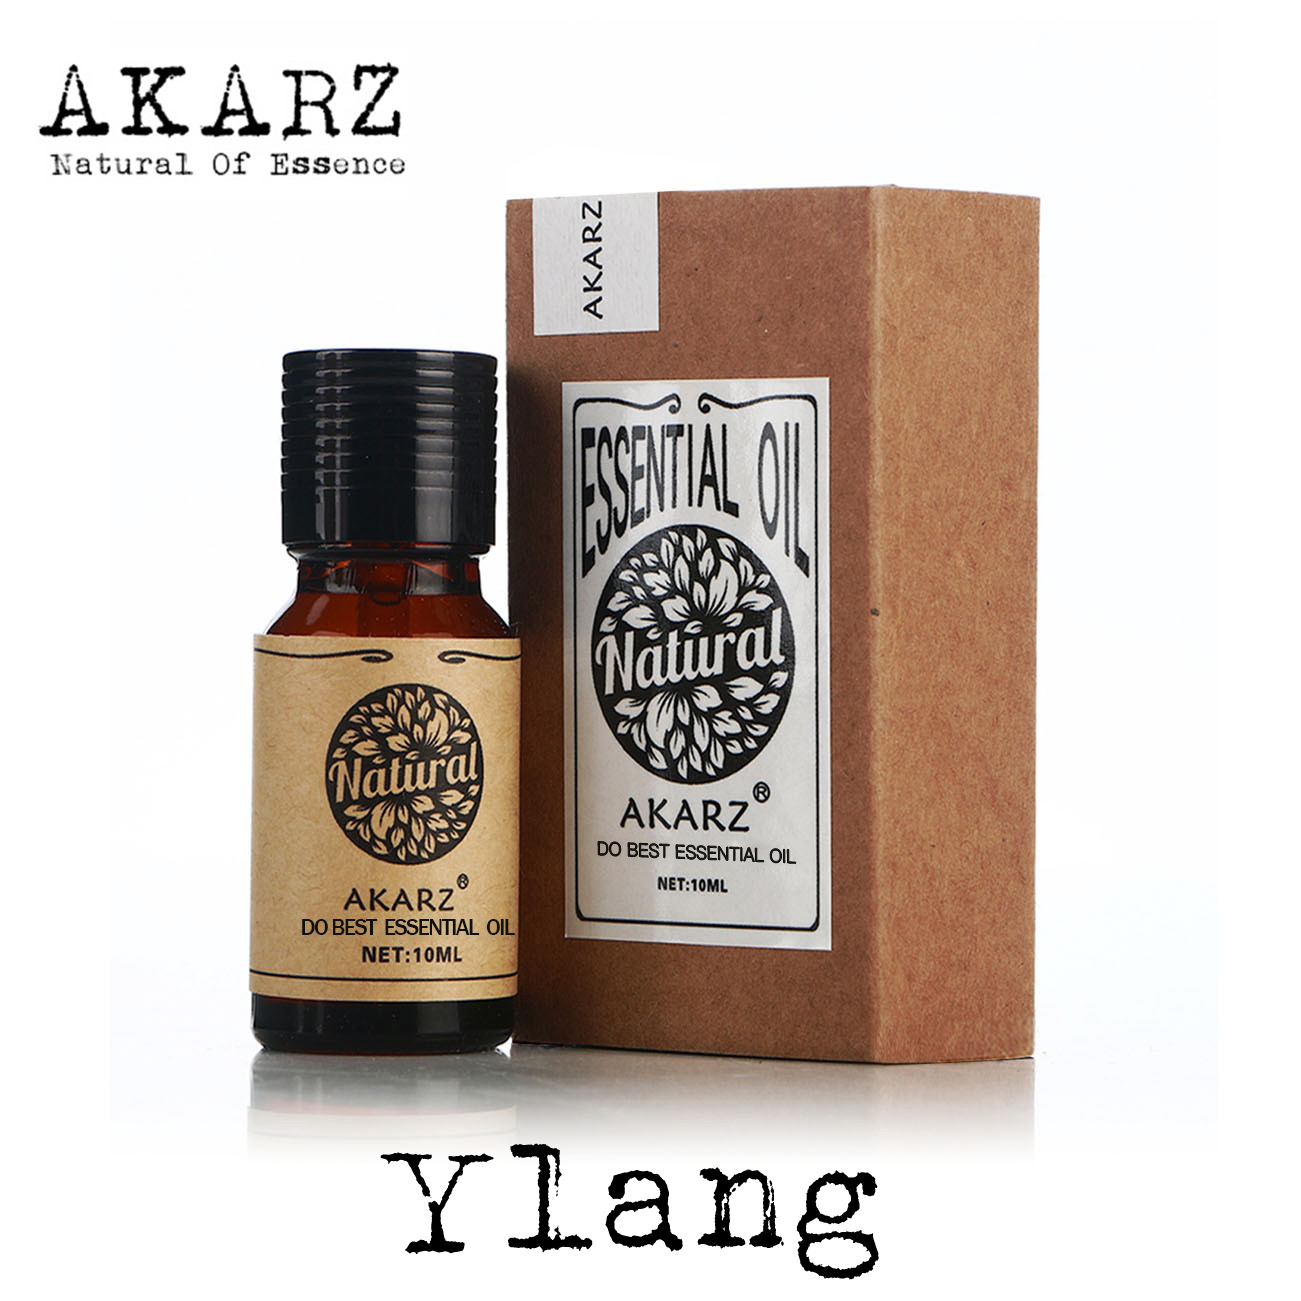 Ylang Ylang Oil Akarz Famoso Brand Frete Grátis Aromaterapia Natural Rosto Corpo Cuidados com a pele Ylang óleo essencial